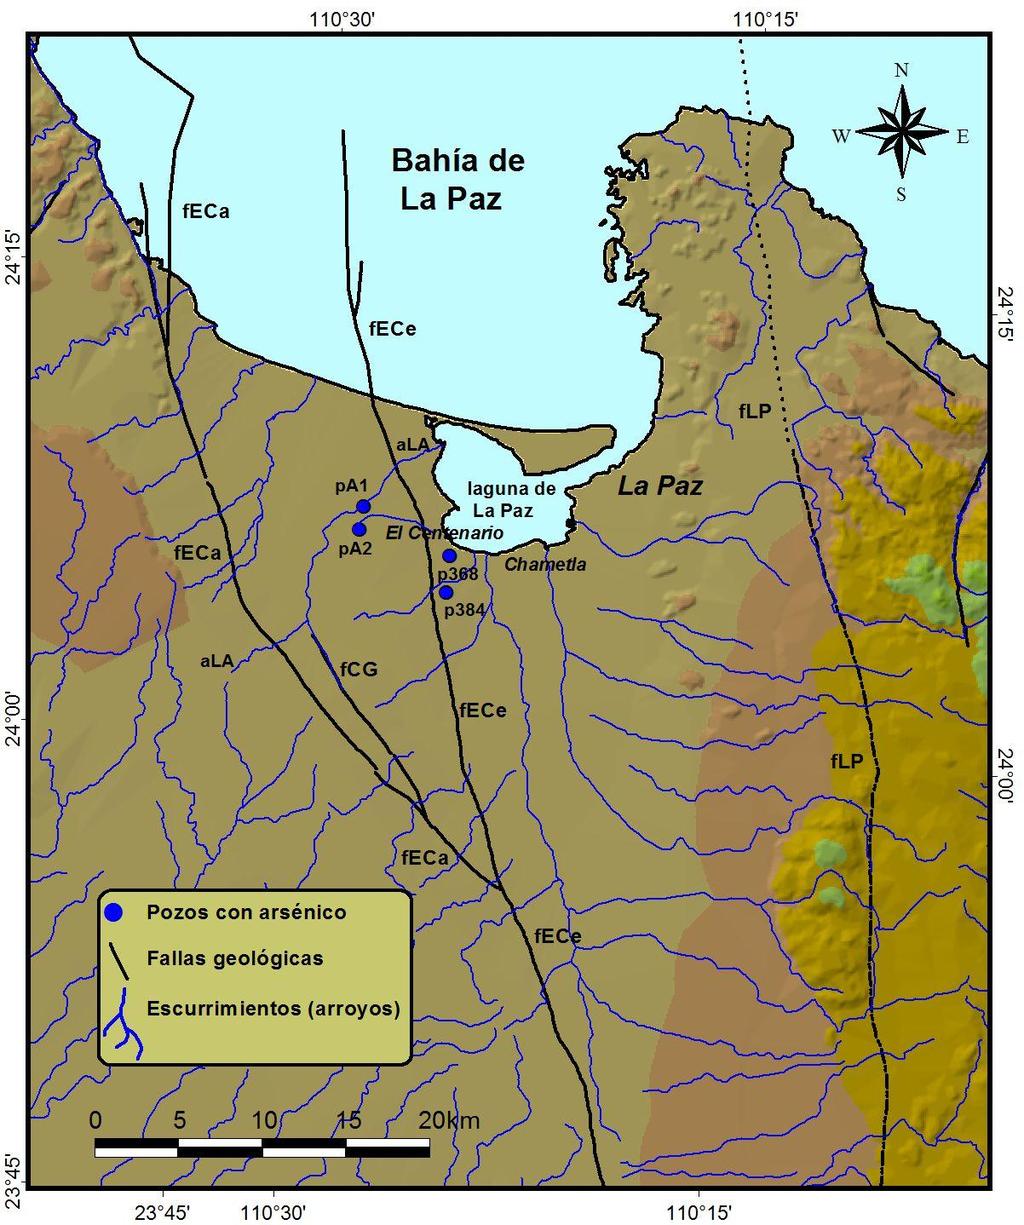 Localización de fallas geológicas principales cercanas al acuífero de La Paz Falla El Carrizal (feca), falla Colinas de Garambullo (fcg), falla El Centenario (fece), y falla La Paz (flp).